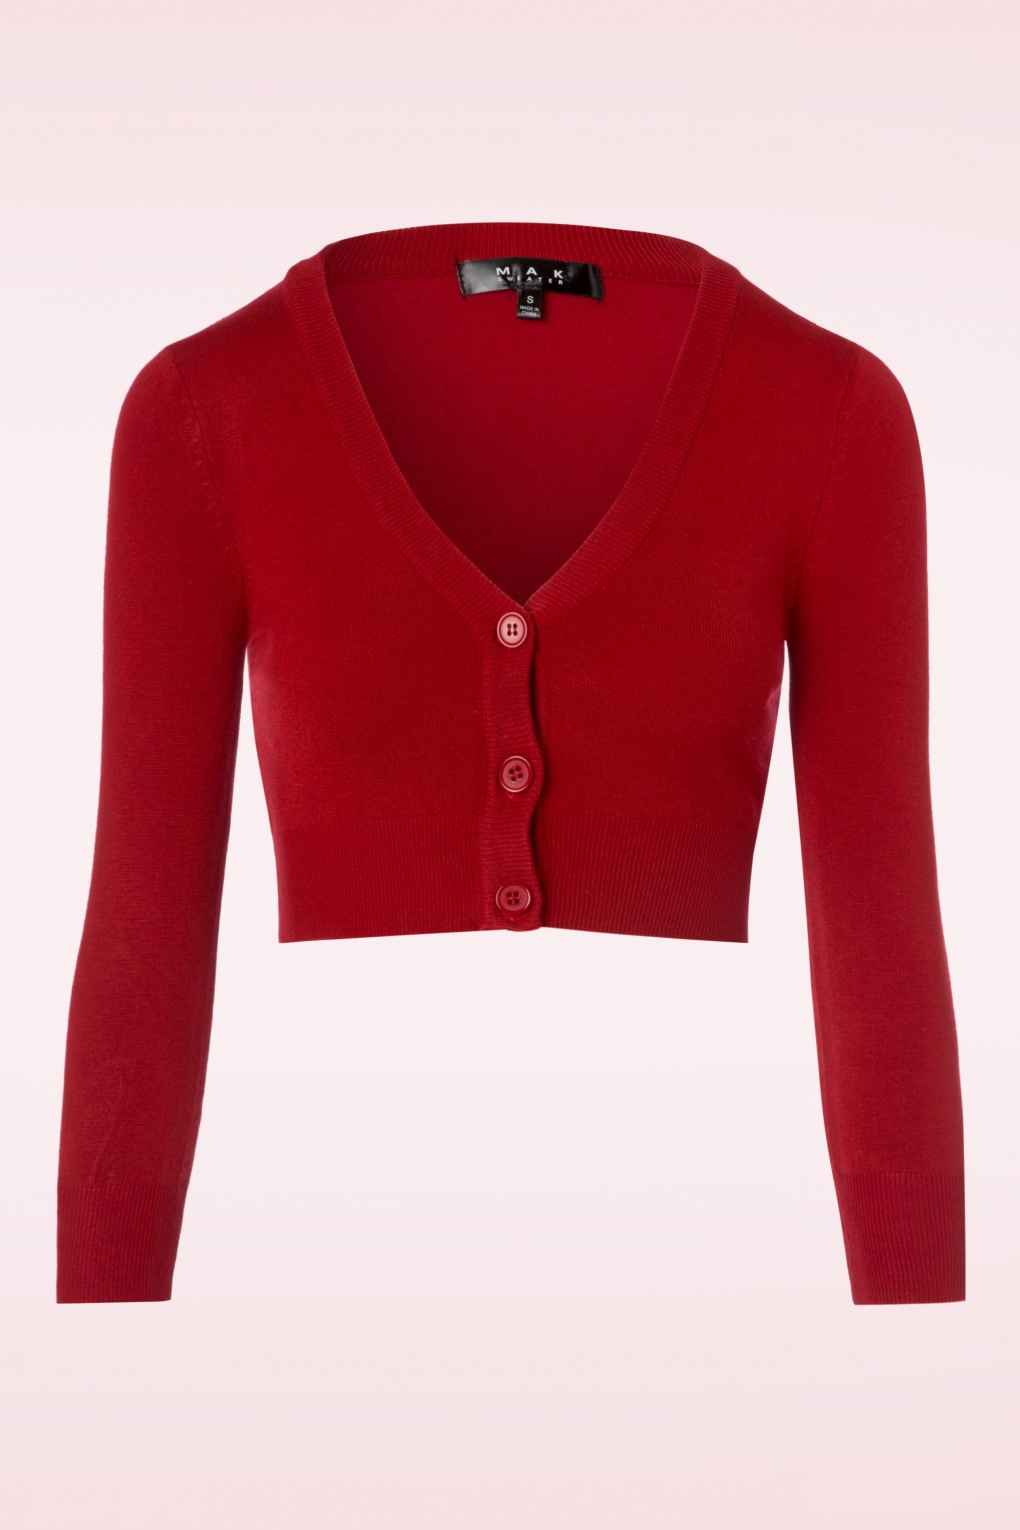 shela cropped cardigan années 50 en rouge vif